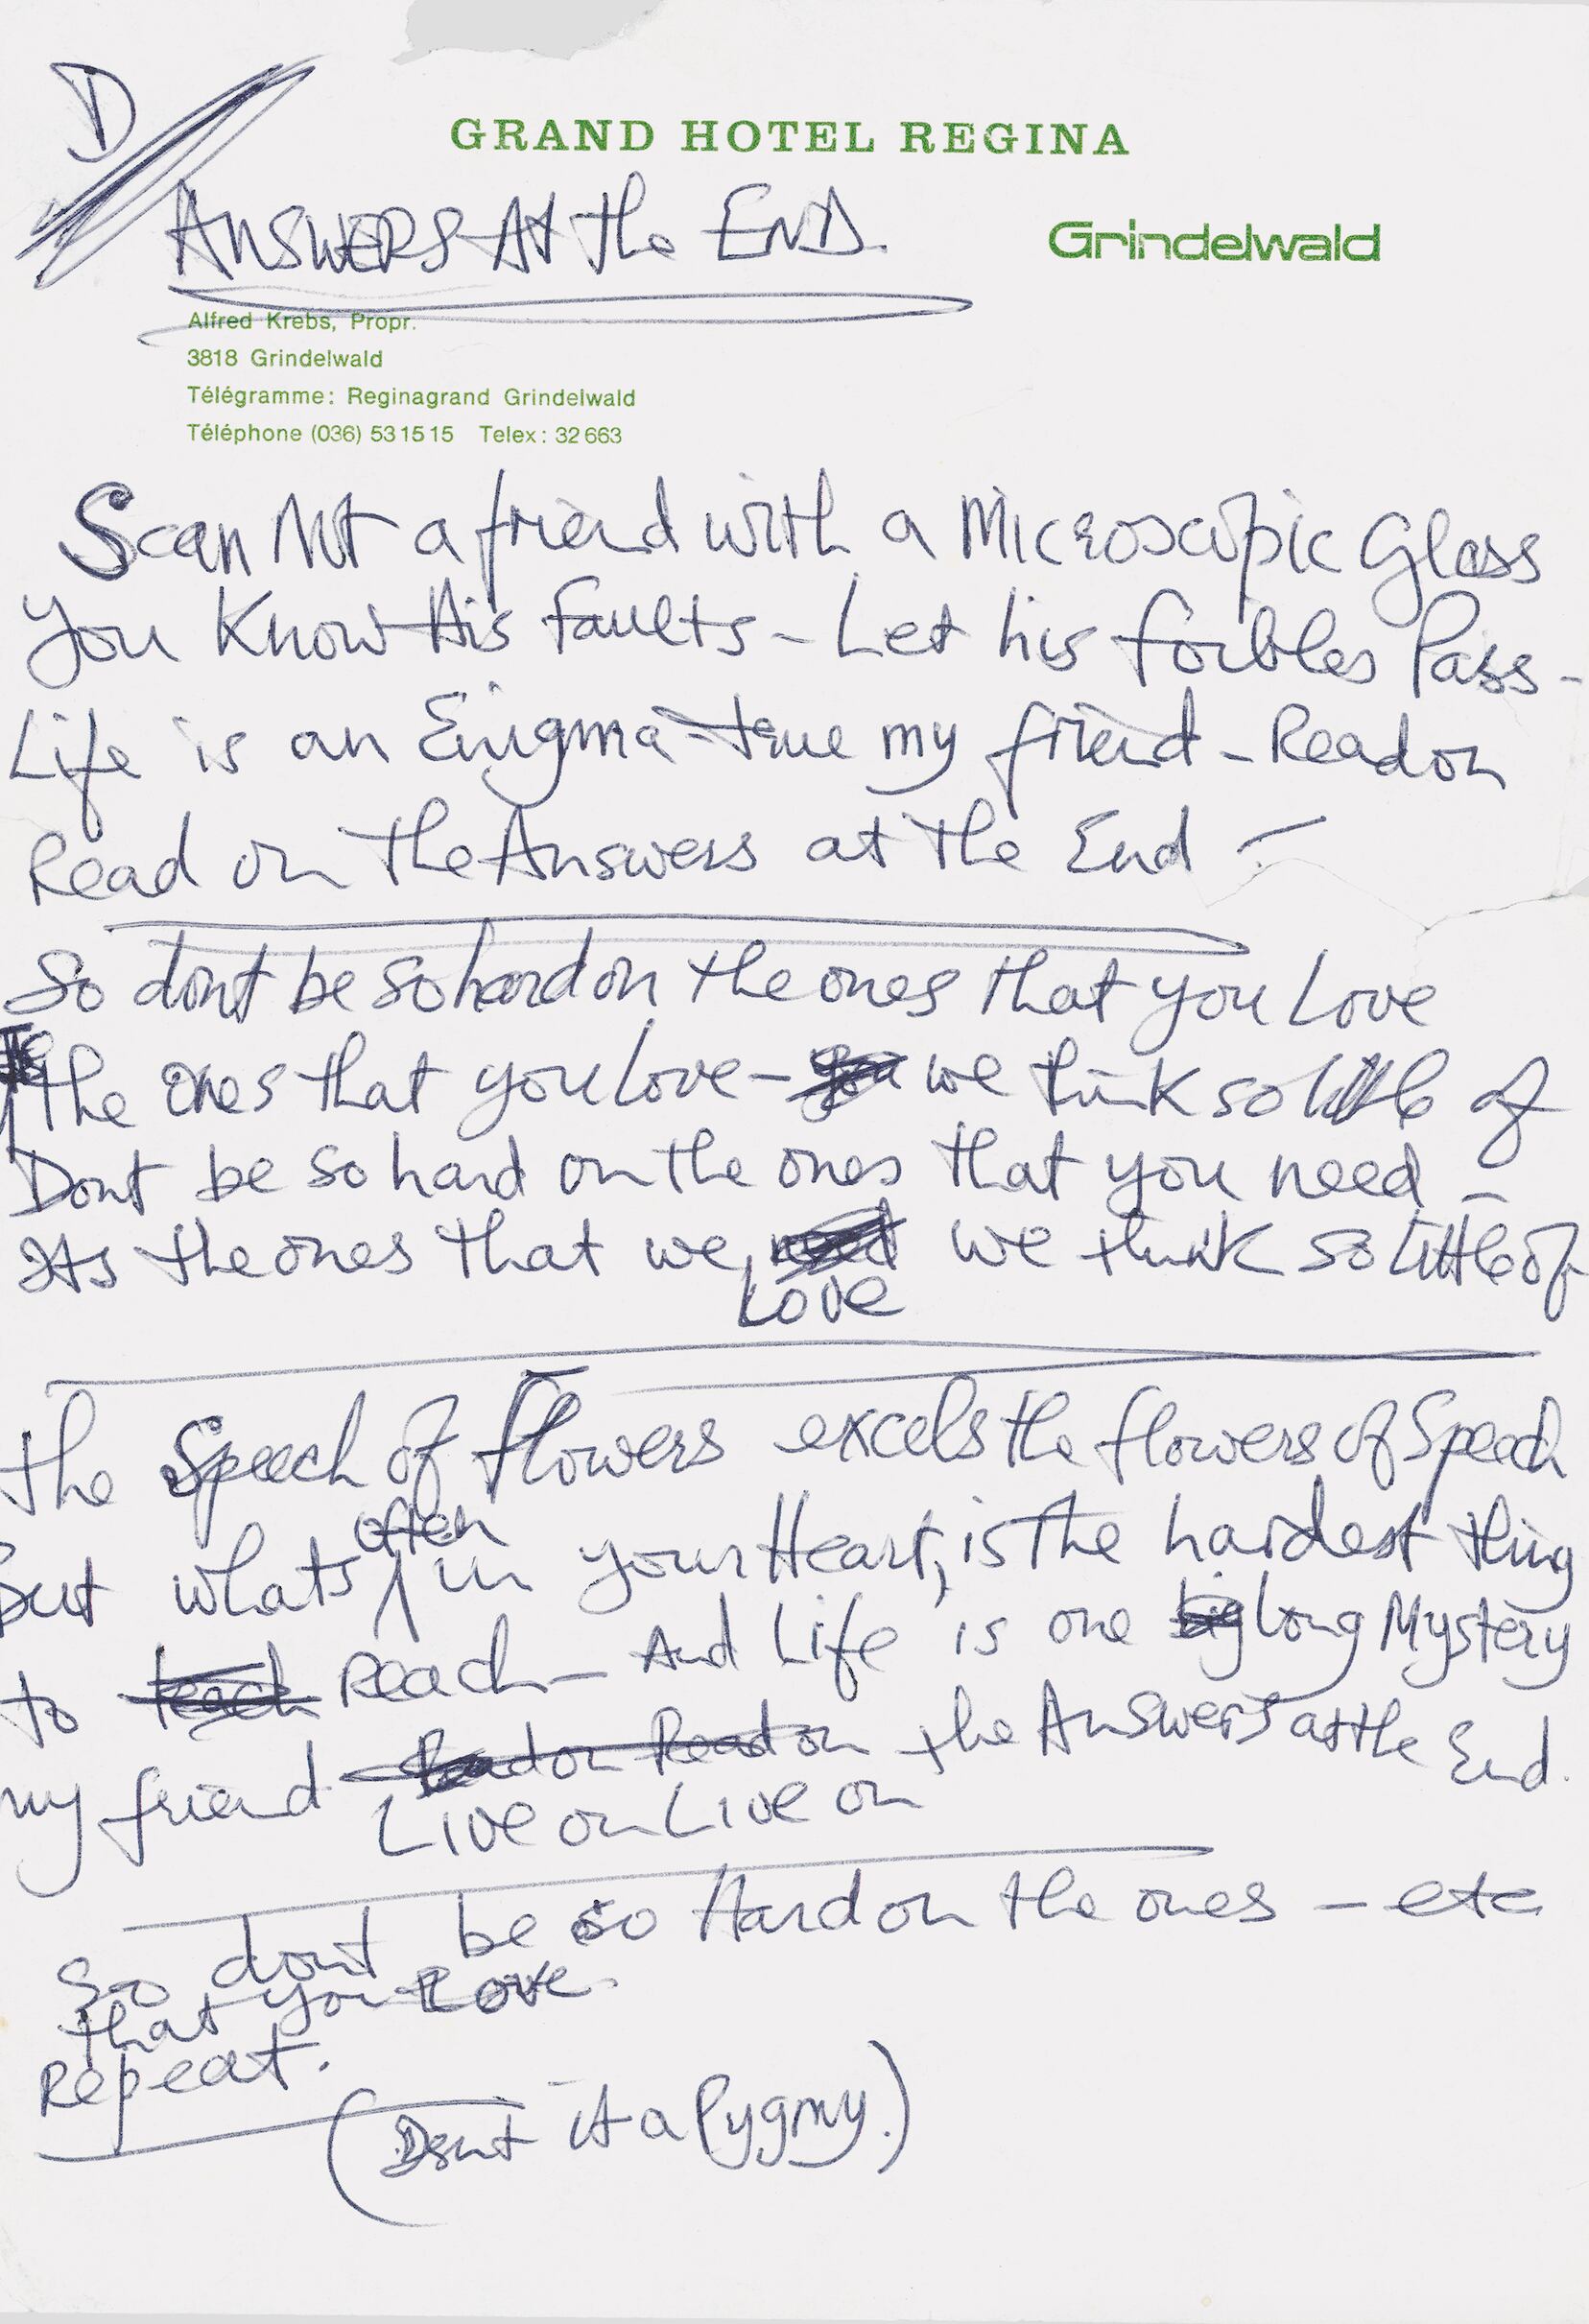  A letra de ‘The answer's at the end’, escrita numa folha com o timbre do Grand Hotel Regina, na Suíça.